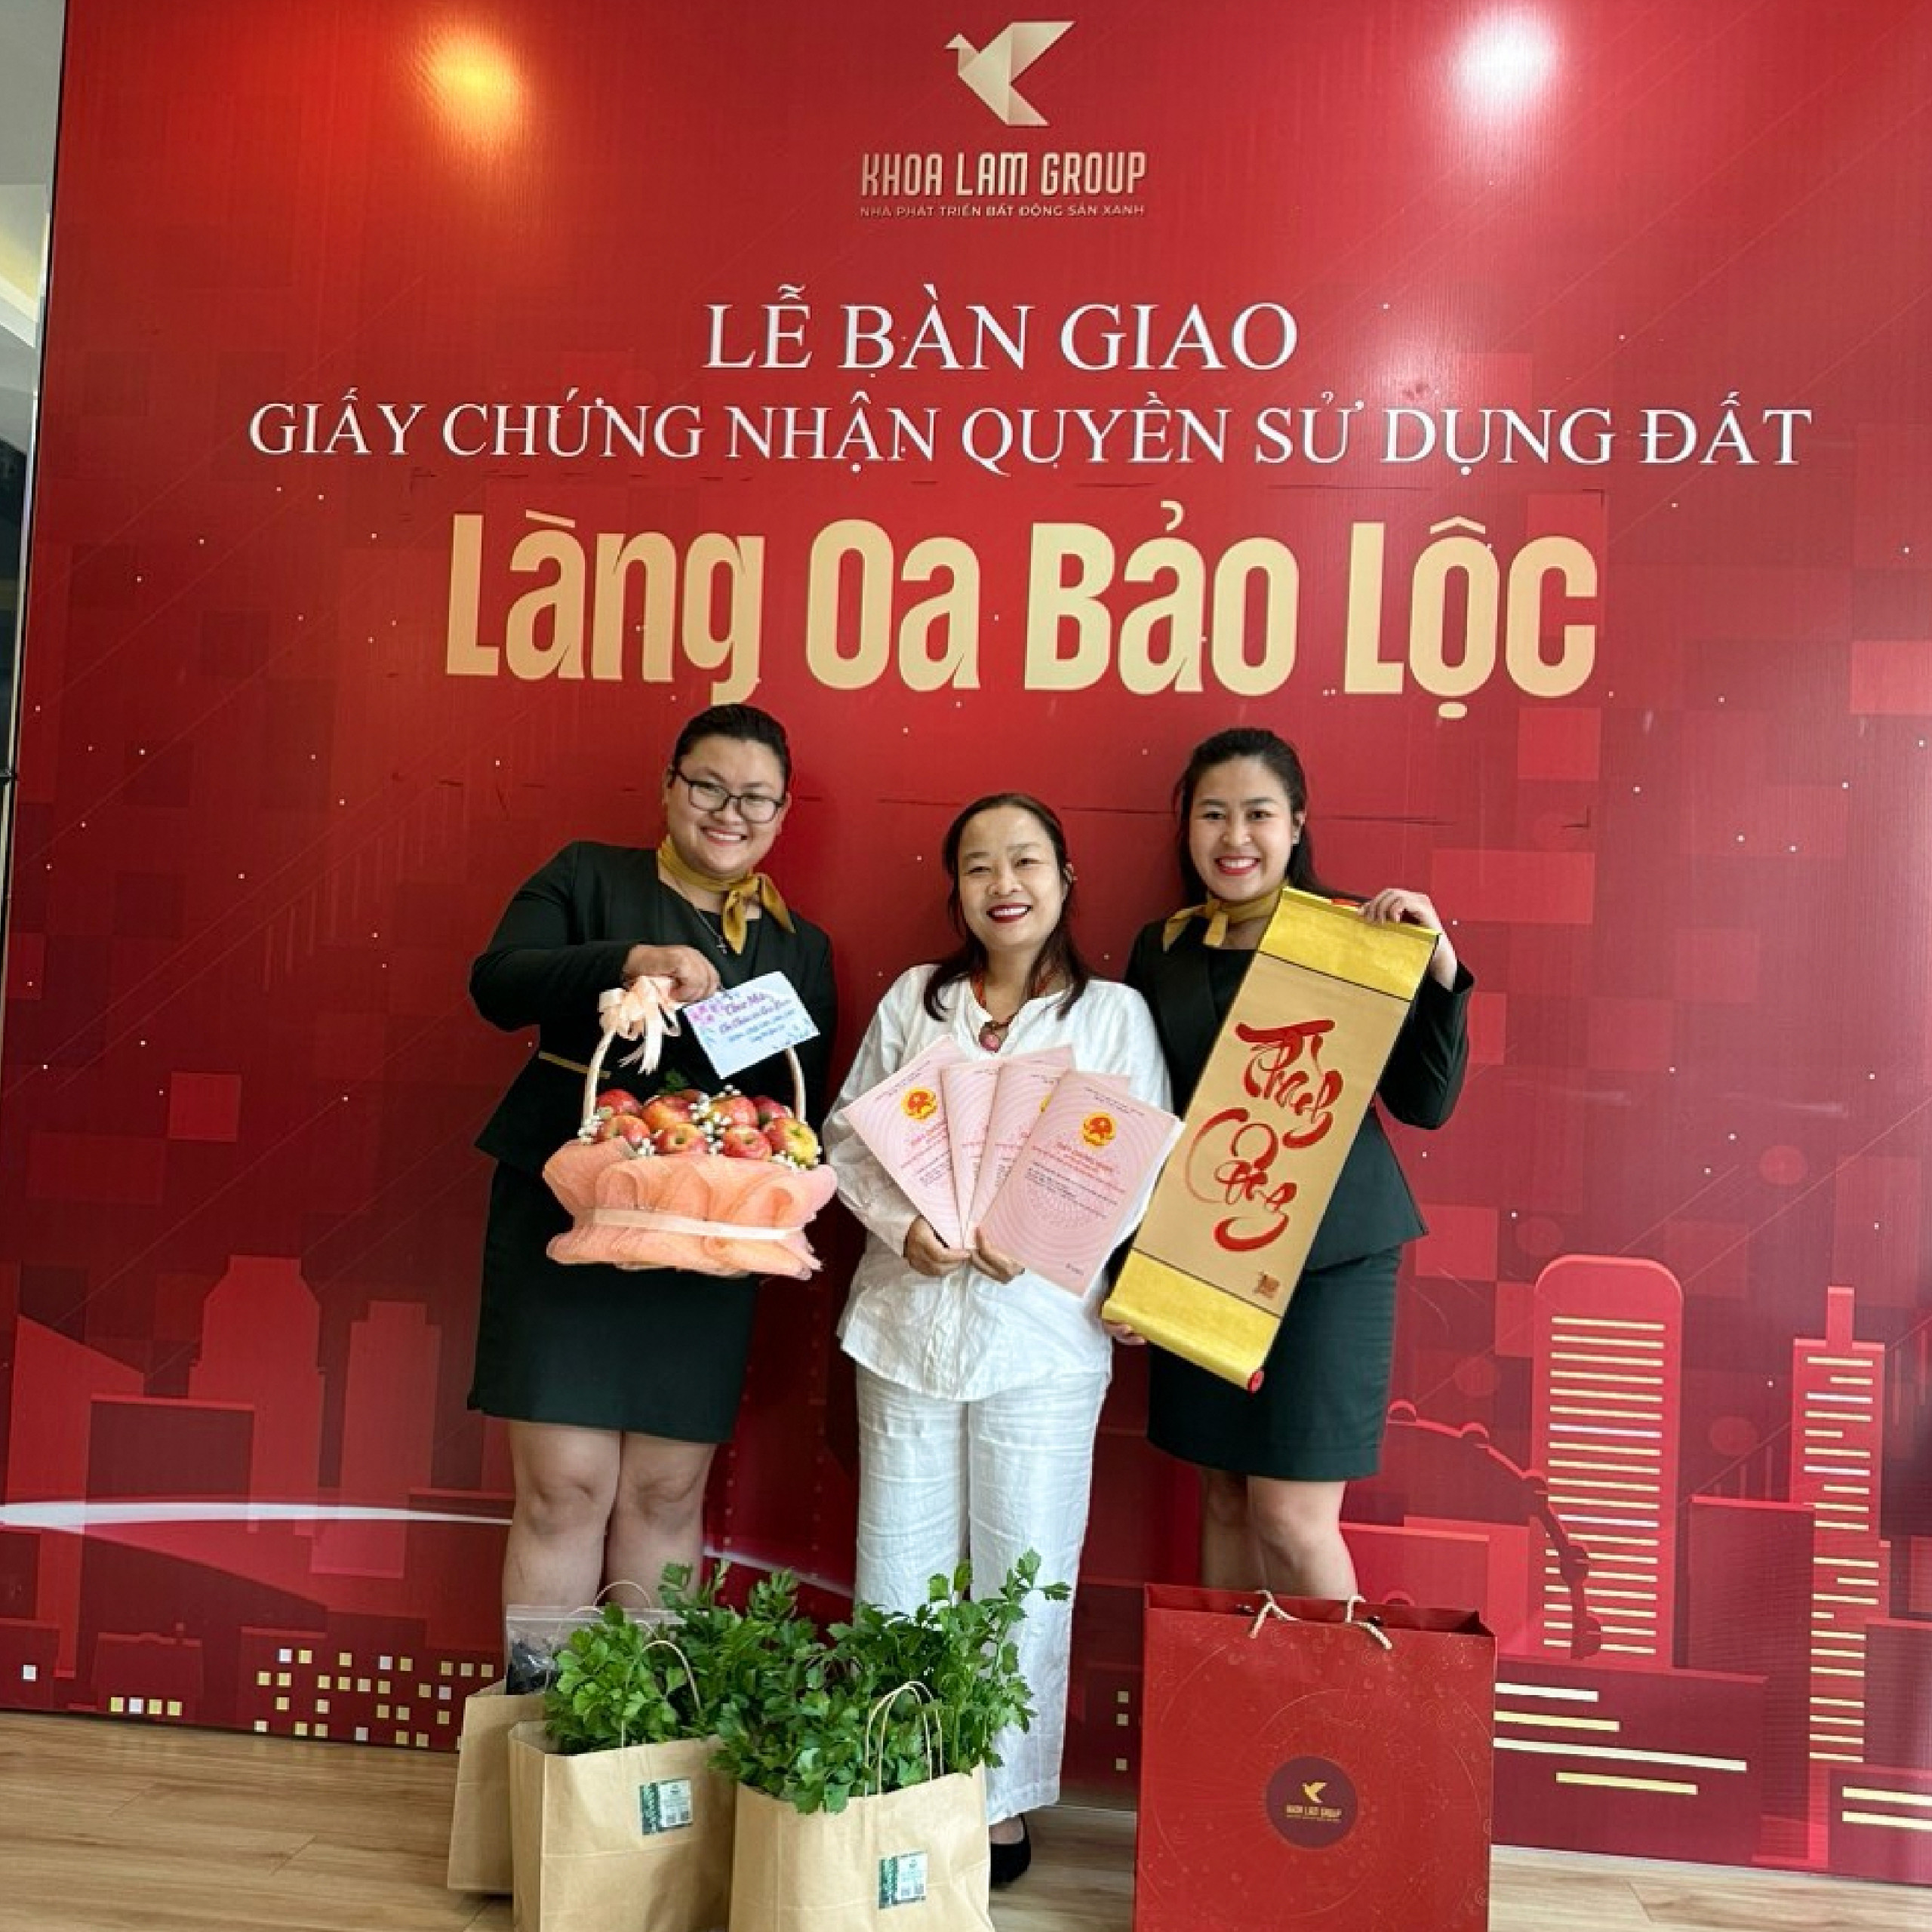 05.le ban giao giay chung nhan quyen su dung dat Lang Oa Bao Loc Khoa Lam Group